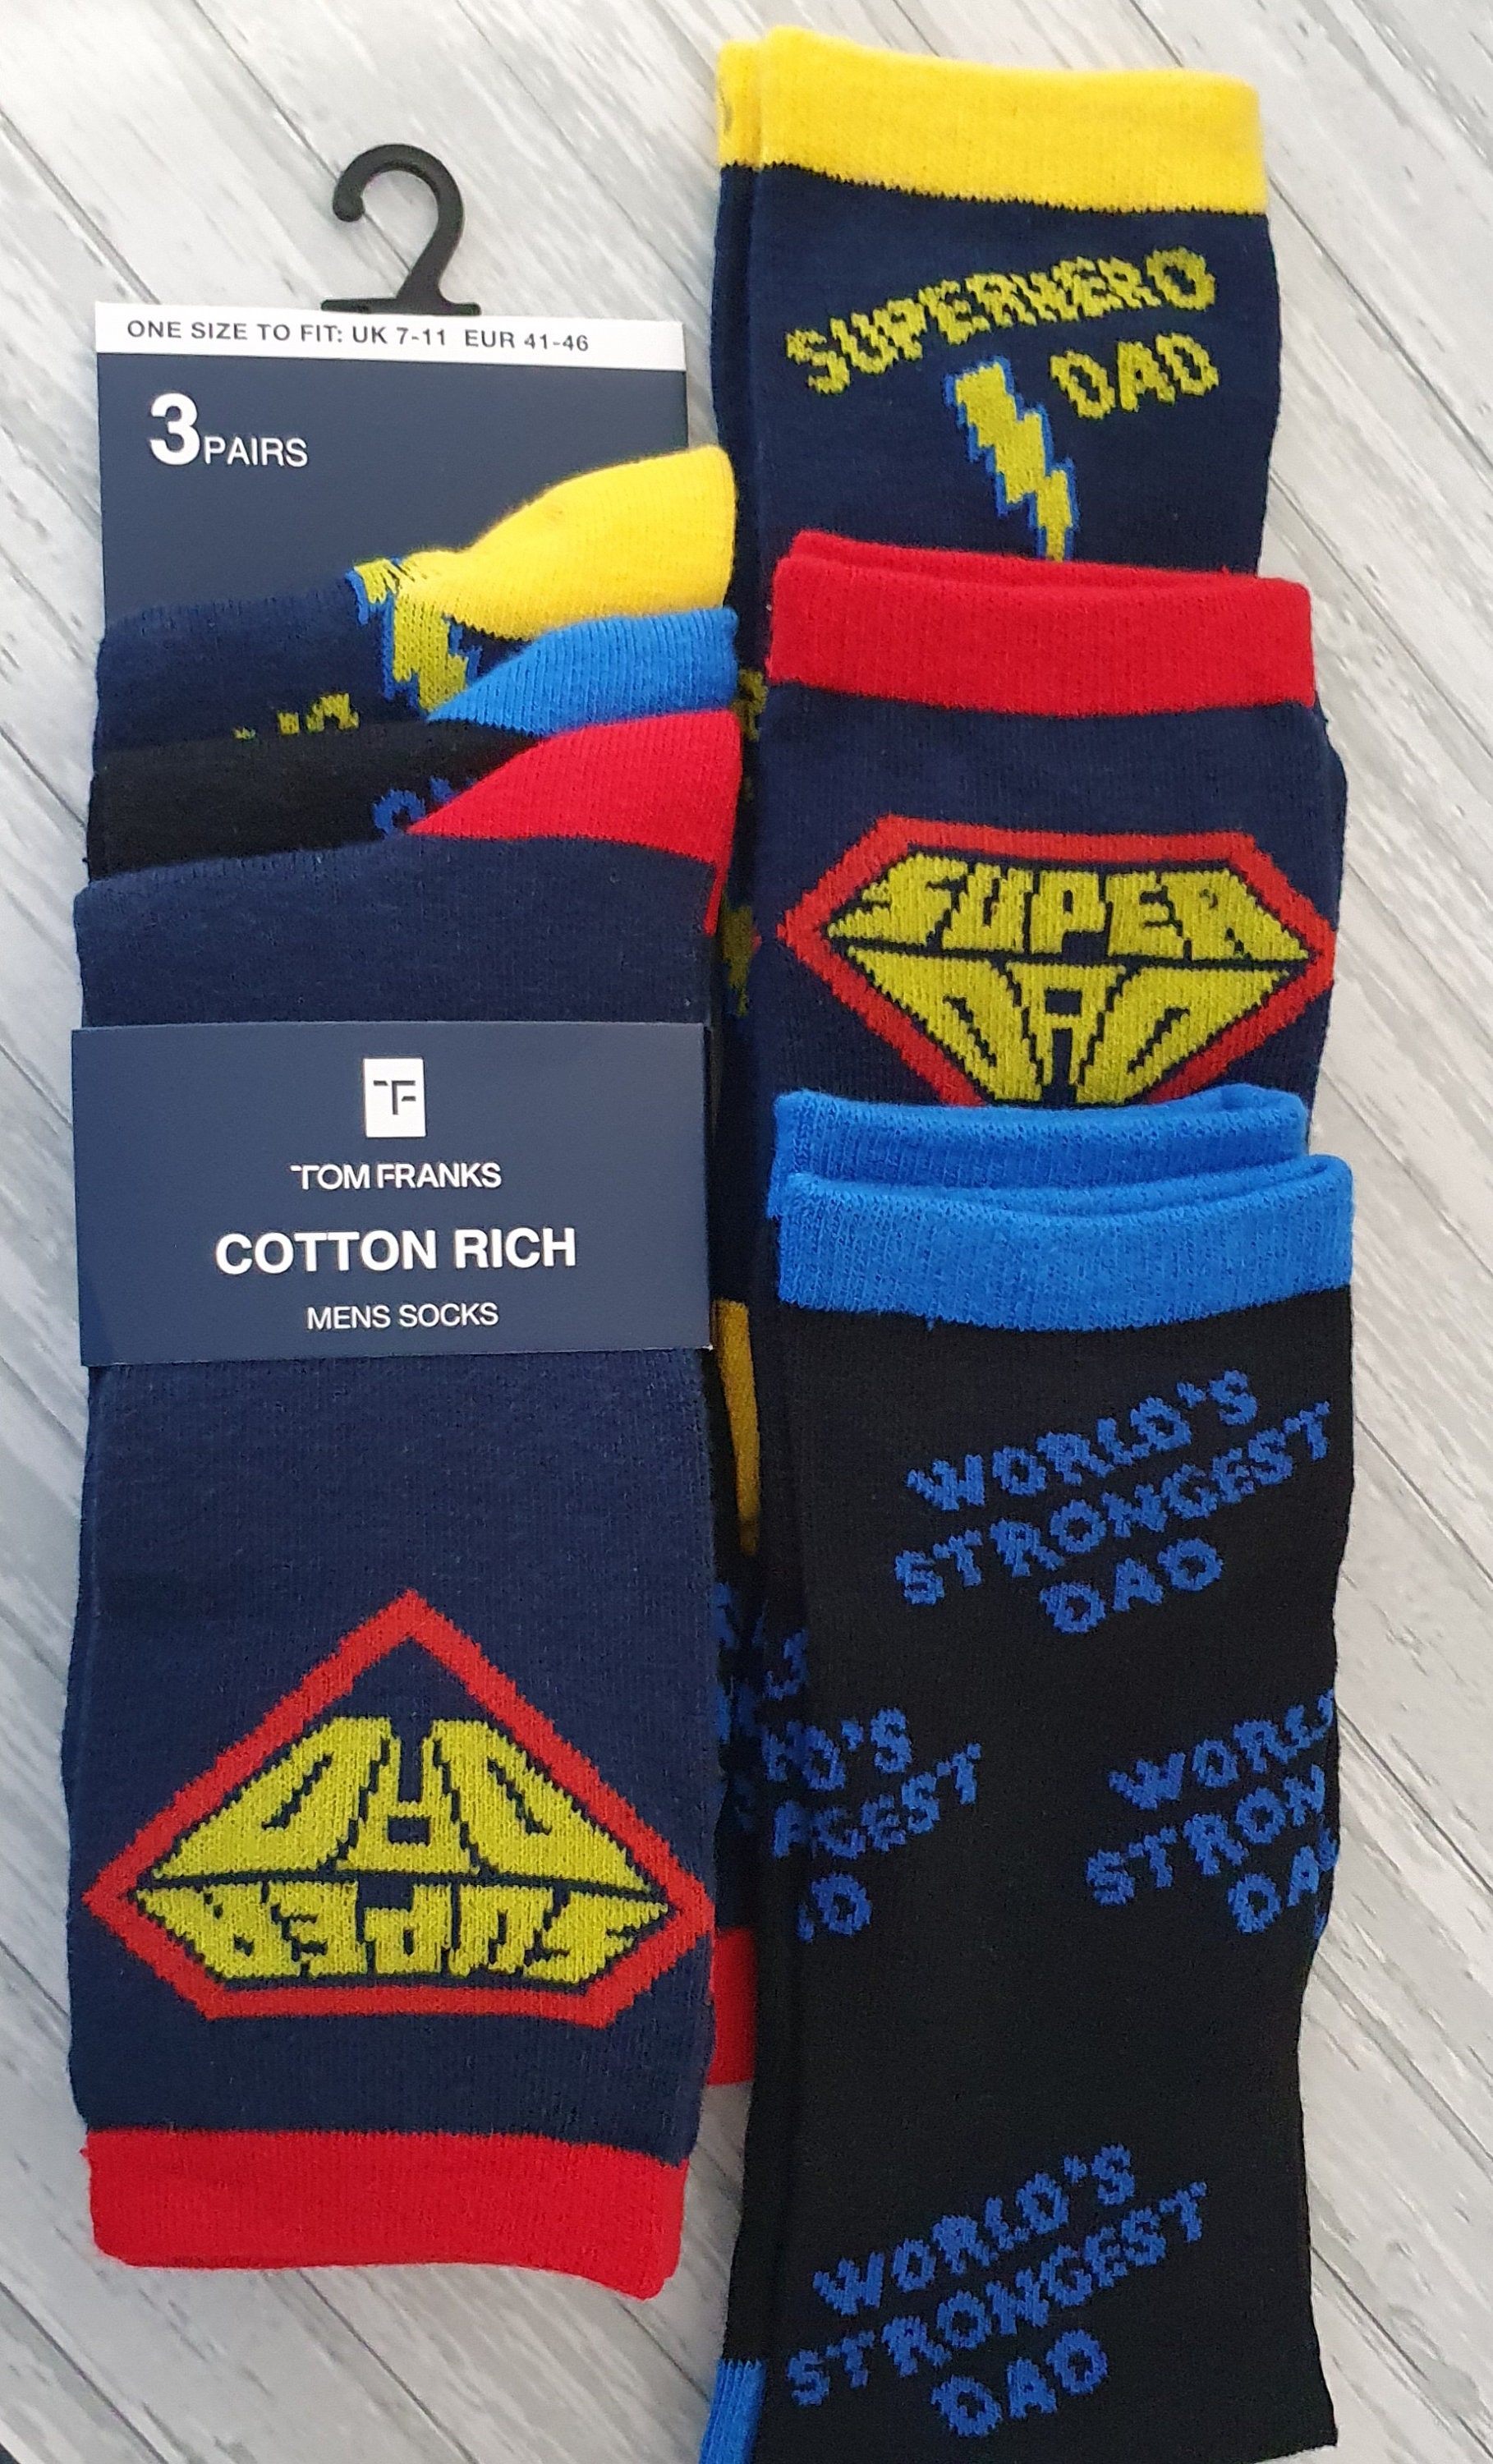 Buy Men's Novelty Socks